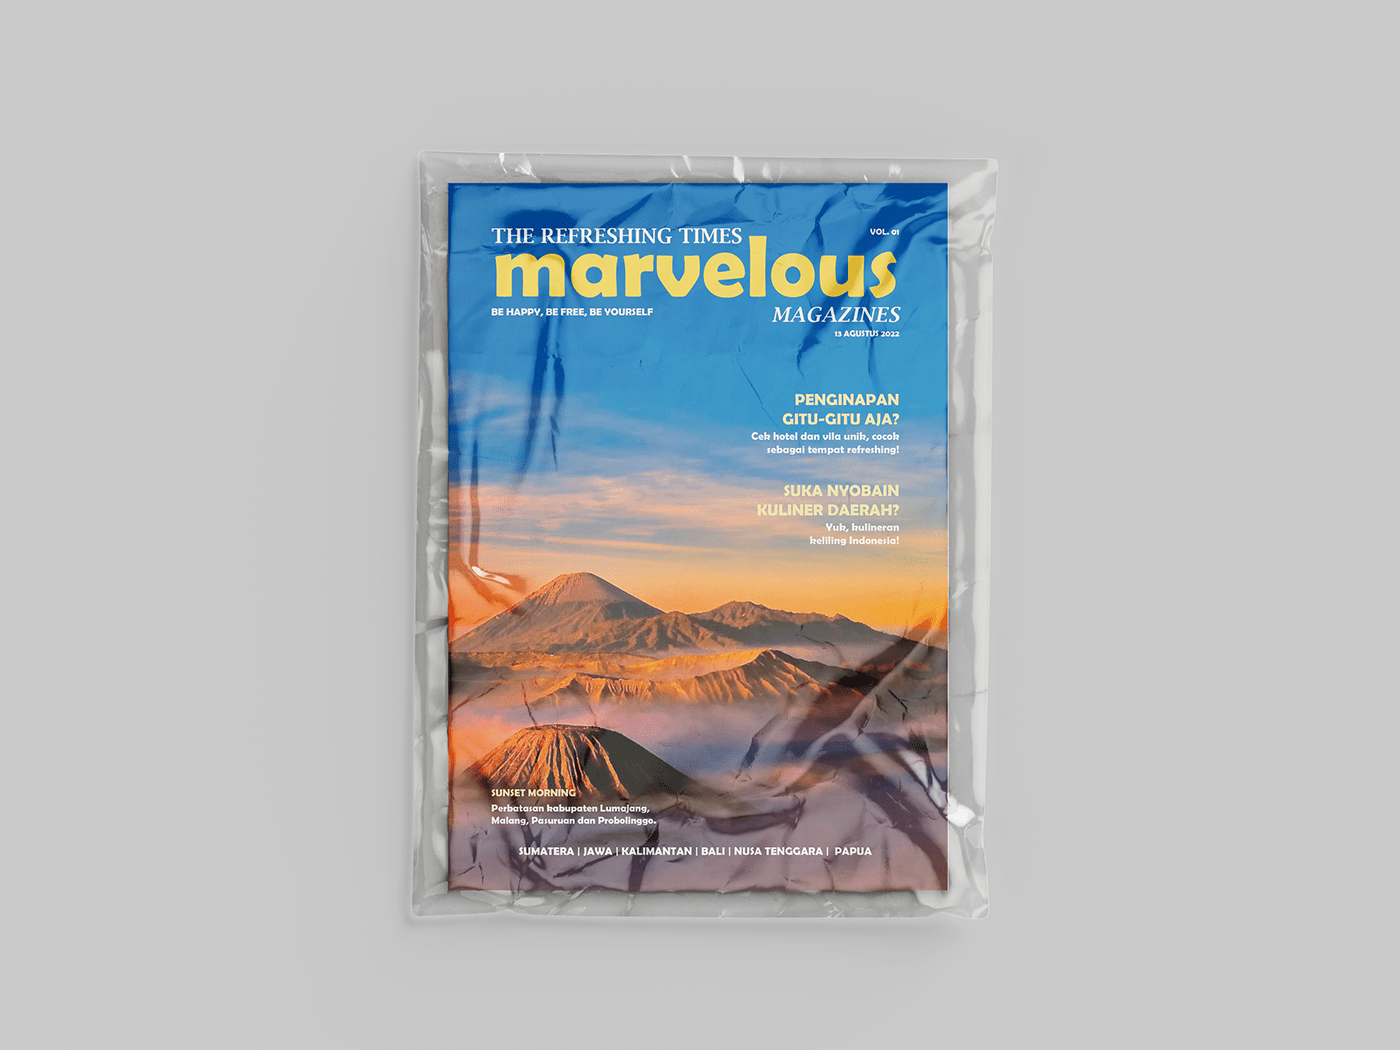 Magazine design magazine layout magazine Layout Design Layout layouting Advertising  advertisement Adobe InDesign cropping